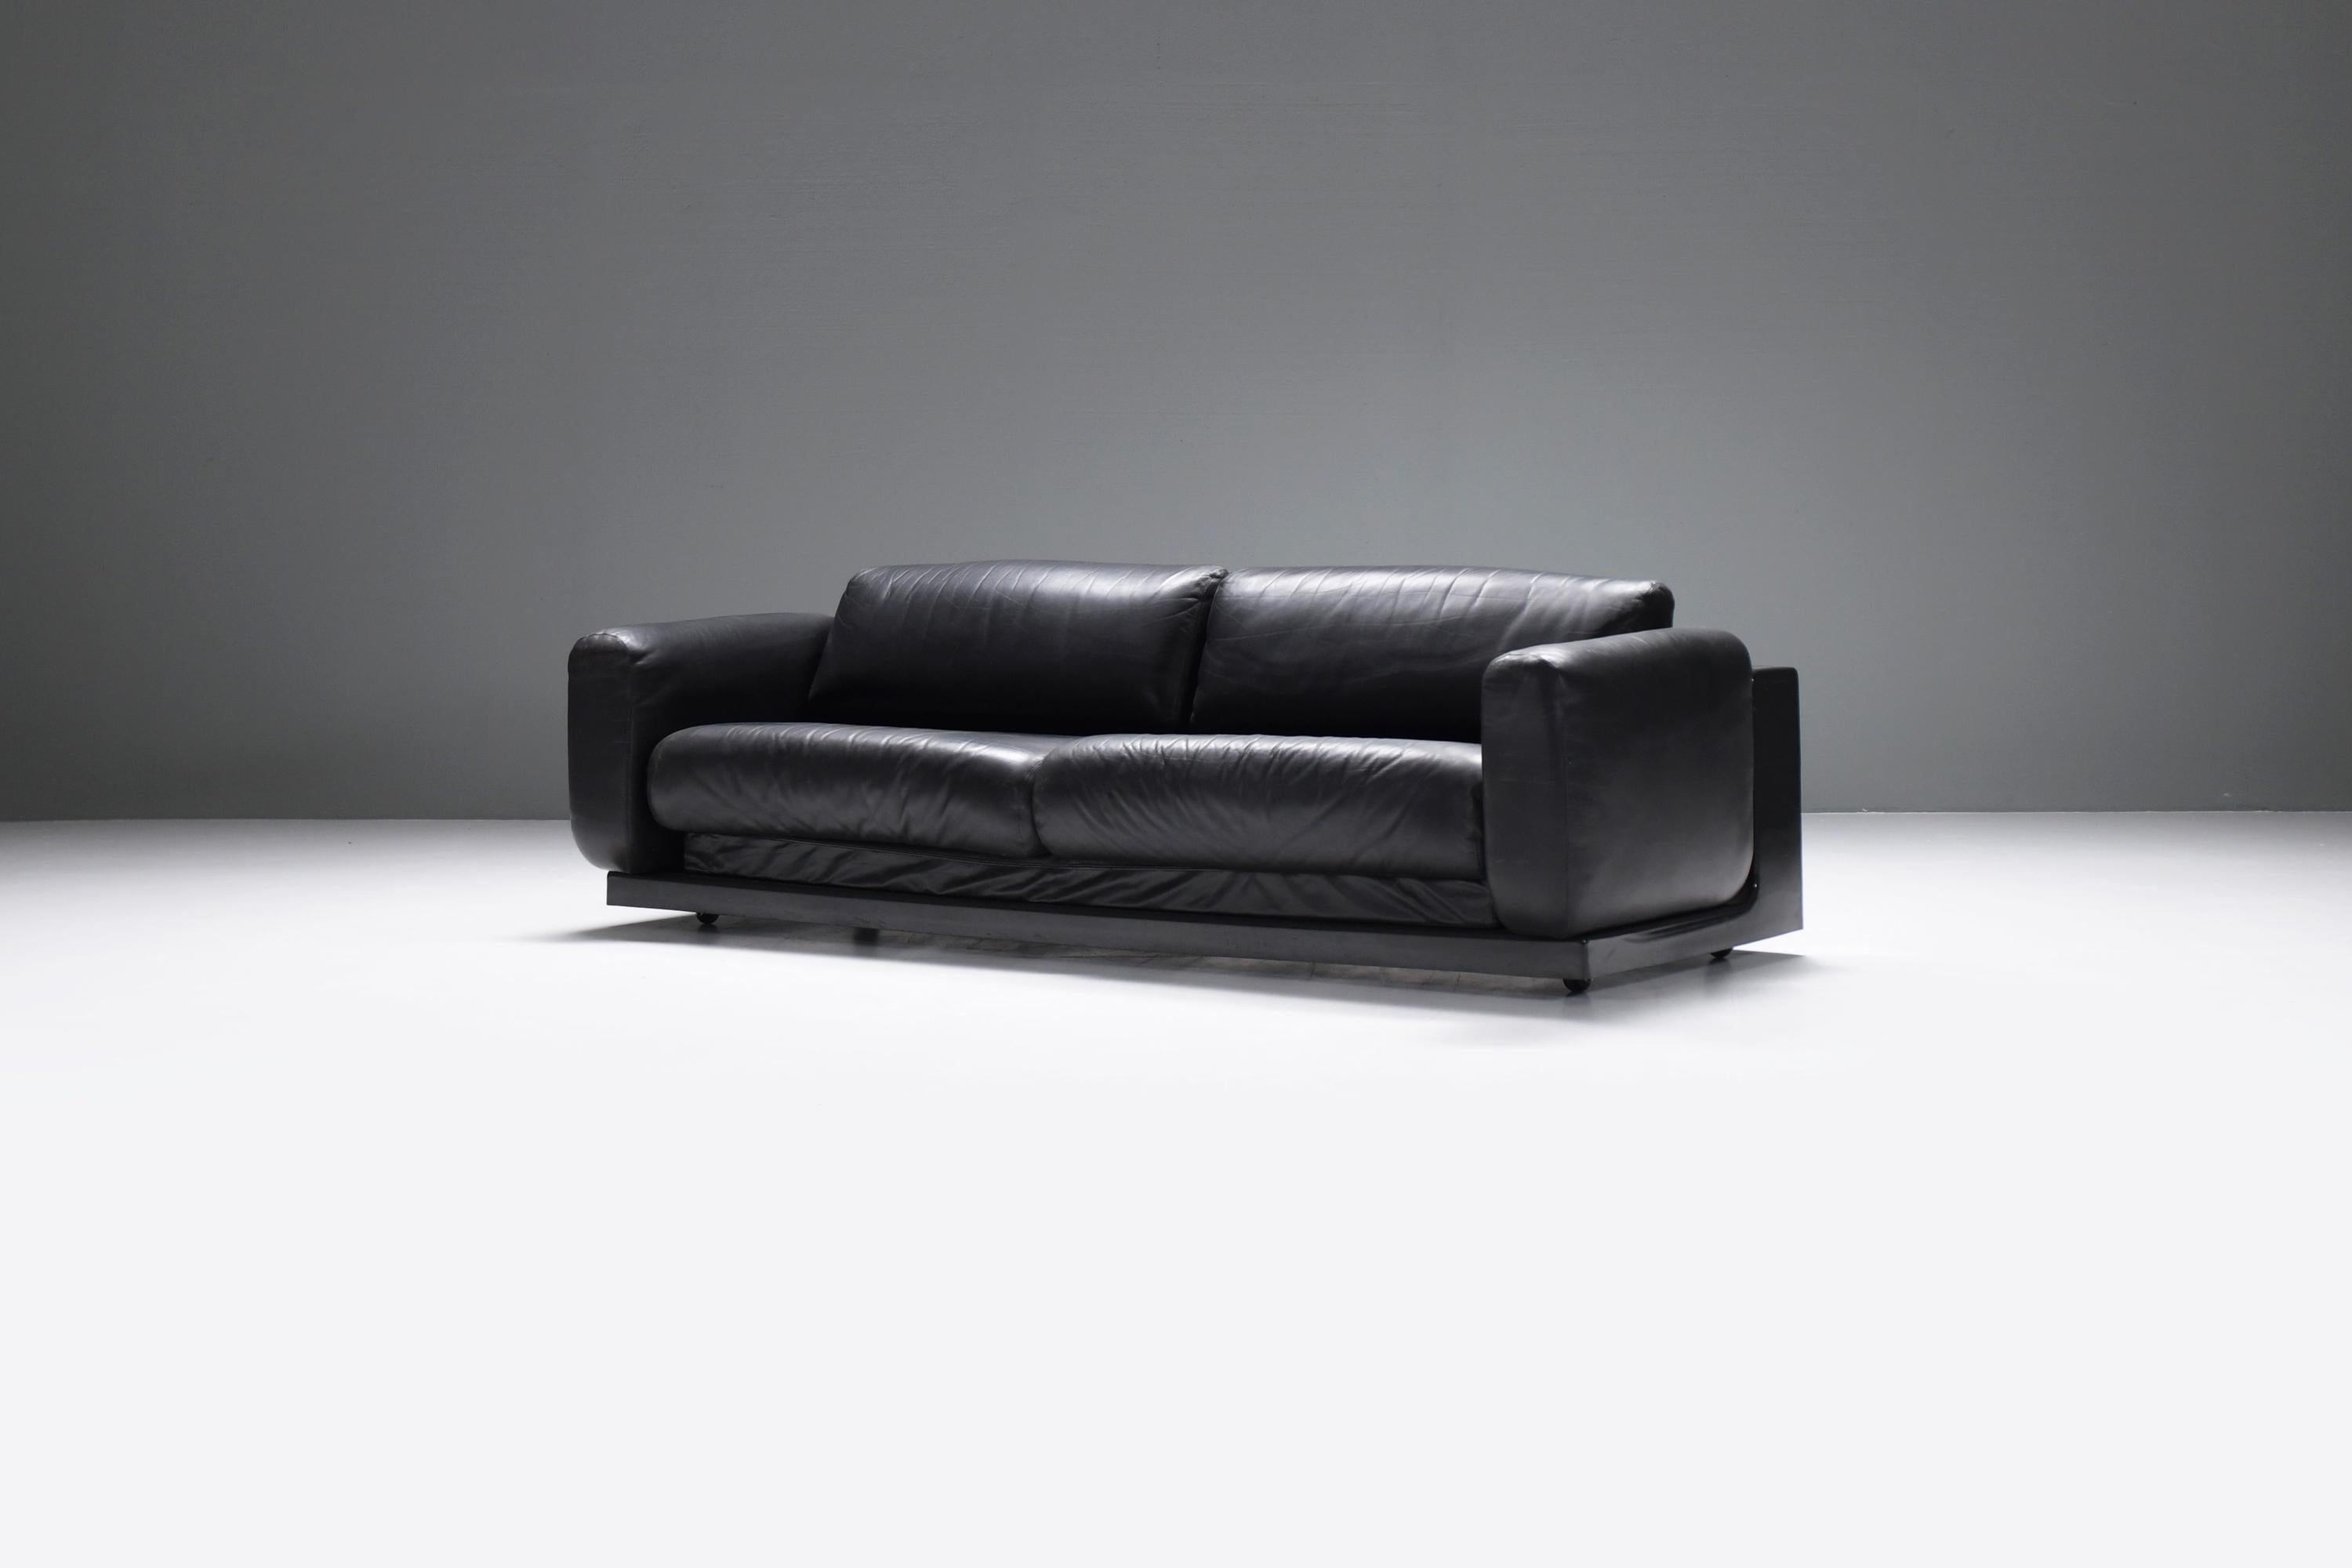 
Canapé de salon Gradual - CINI - Knoll
Superbe et rare canapé Gradual en cuir noir.
Conçu par CINI pour Knoll.

En 1970, Boeri a présenté sa première pièce conçue spécifiquement pour Knoll, le Gradual Lounge, un système de salon ajustable innovant,